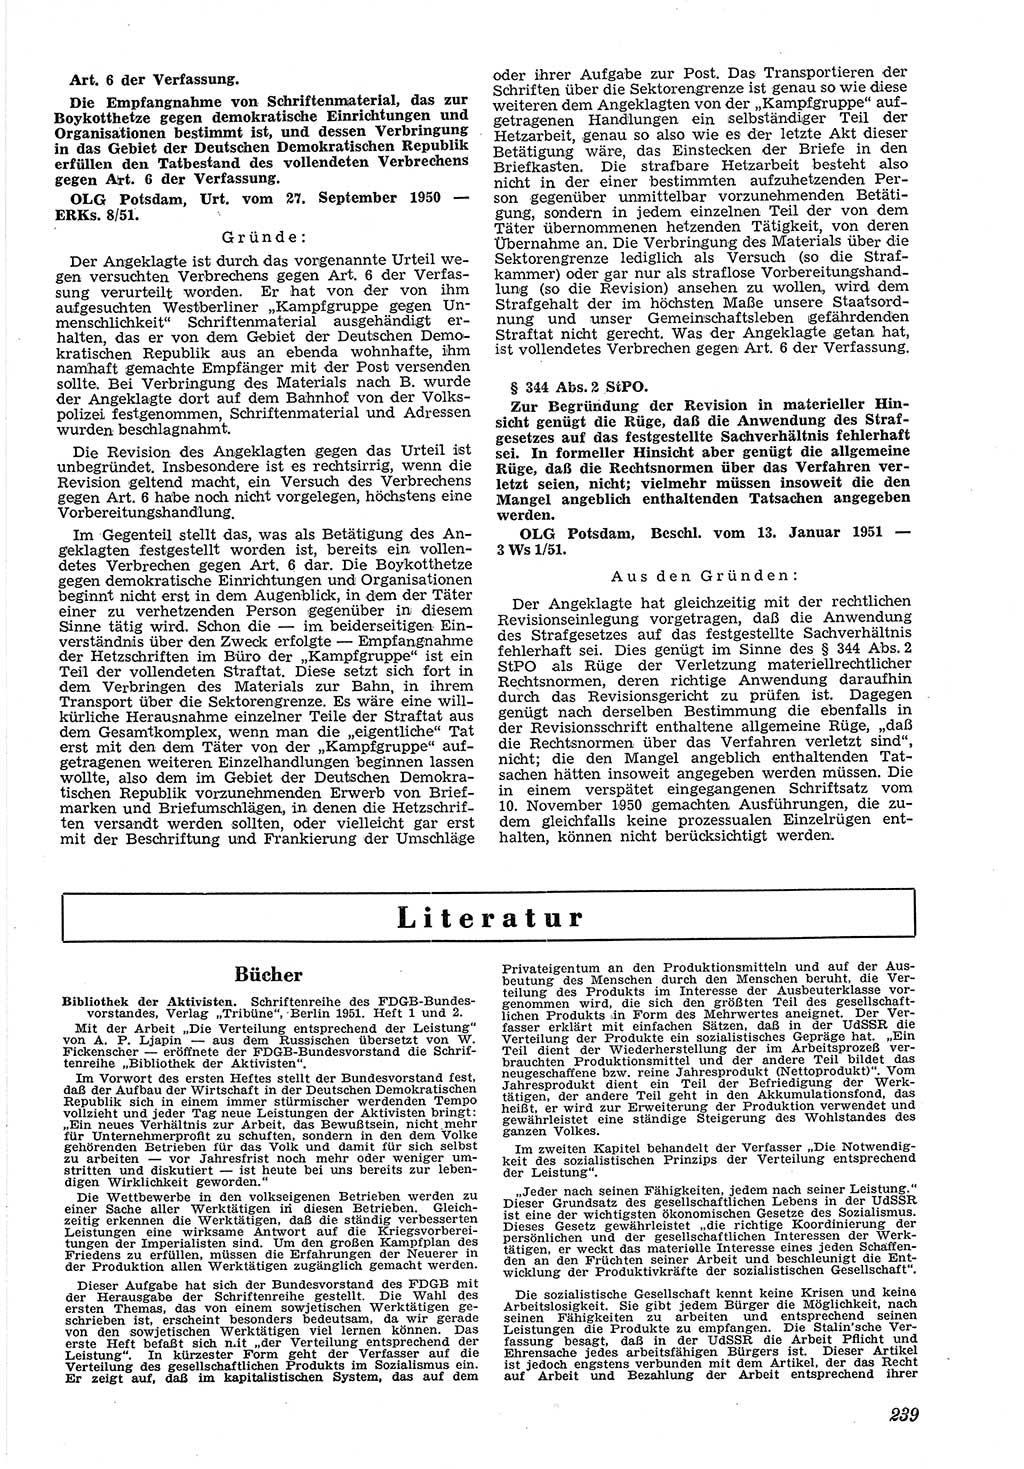 Neue Justiz (NJ), Zeitschrift für Recht und Rechtswissenschaft [Deutsche Demokratische Republik (DDR)], 5. Jahrgang 1951, Seite 239 (NJ DDR 1951, S. 239)